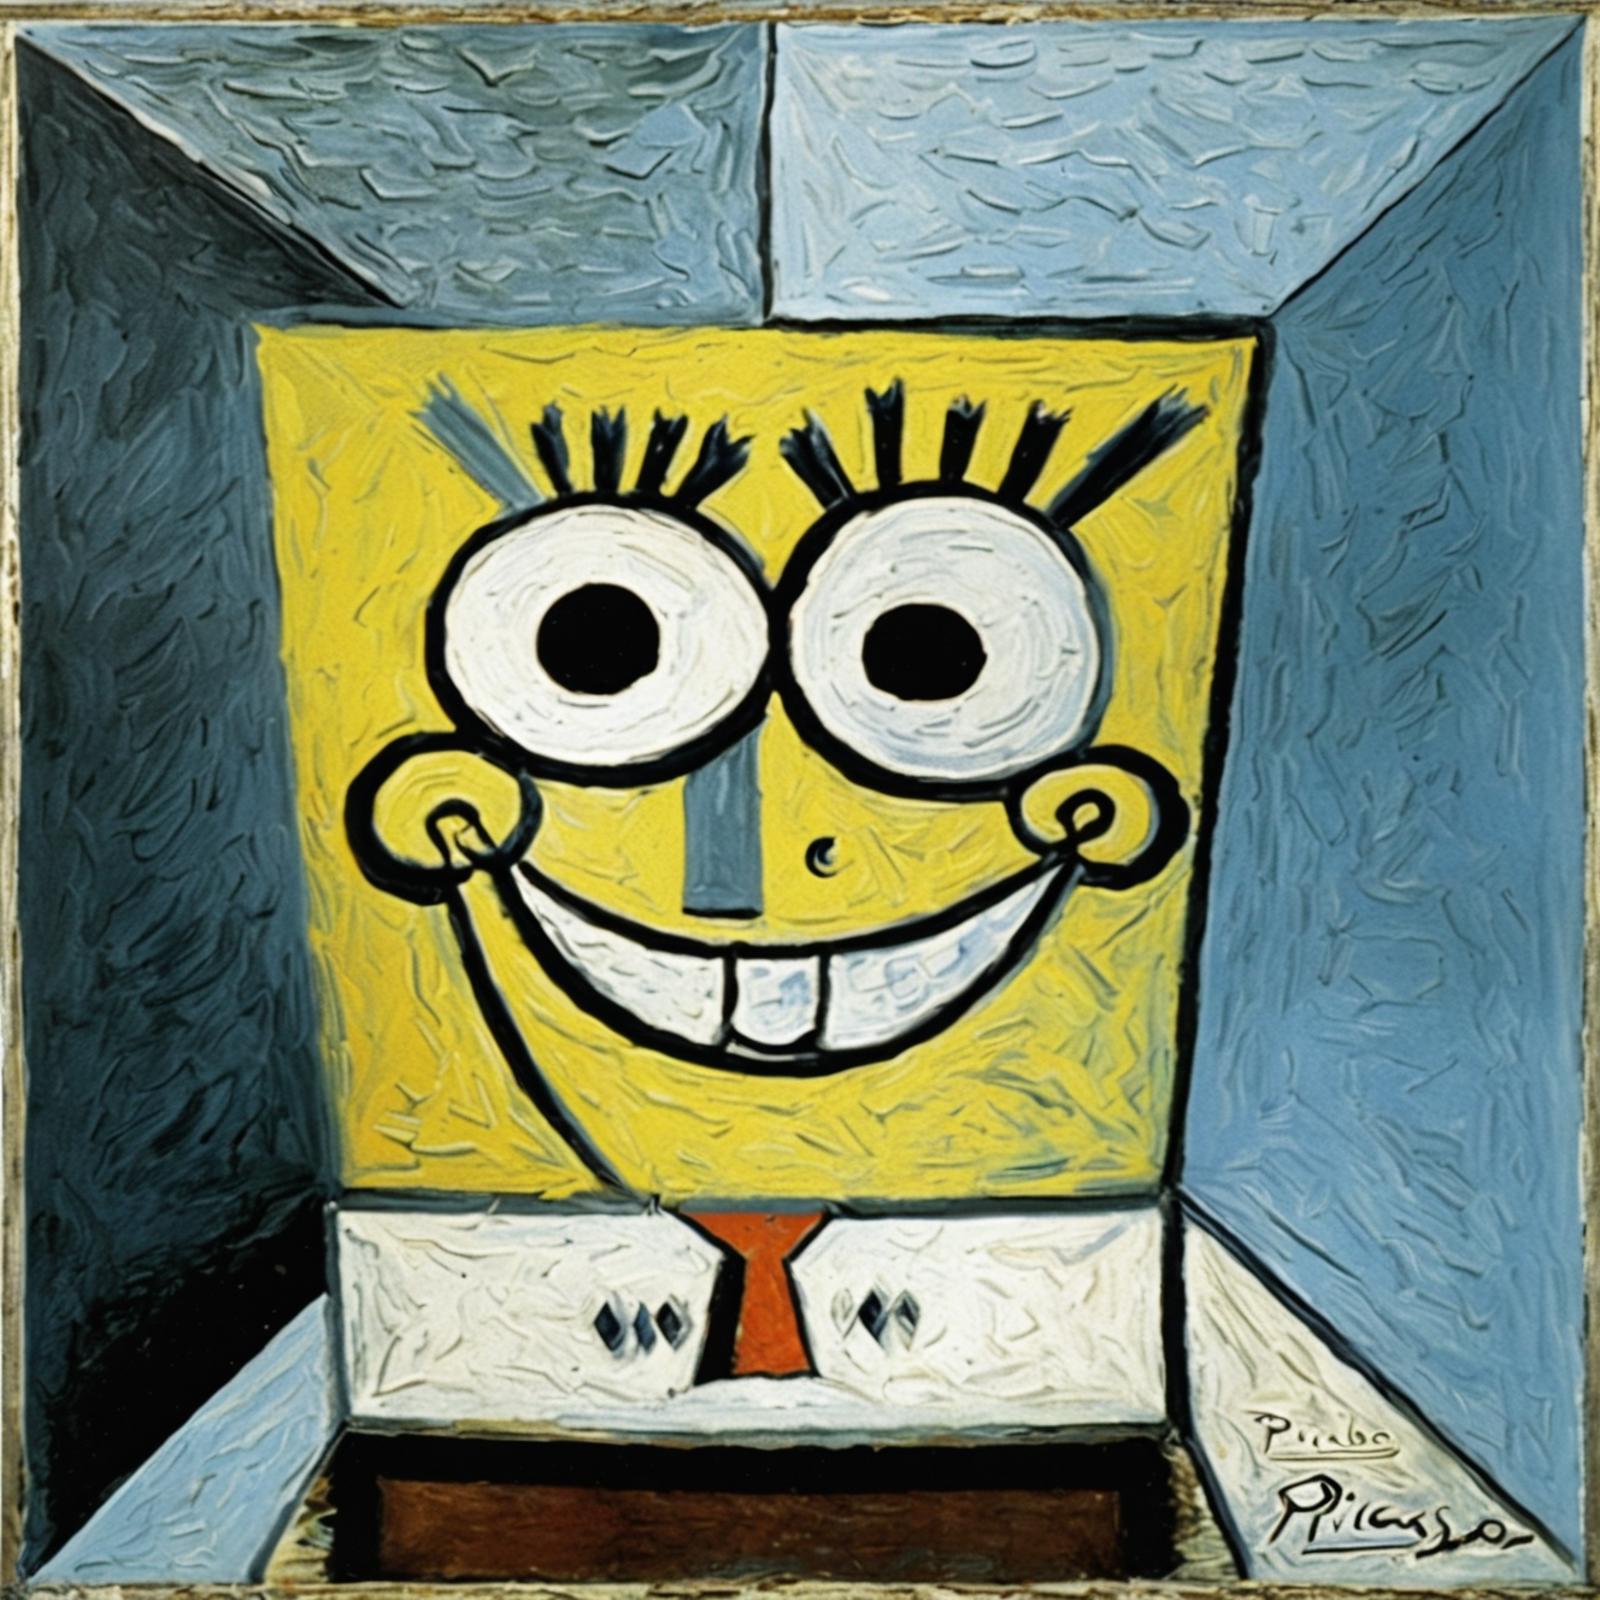 A Spongebob Squarepants painting with a unique style.